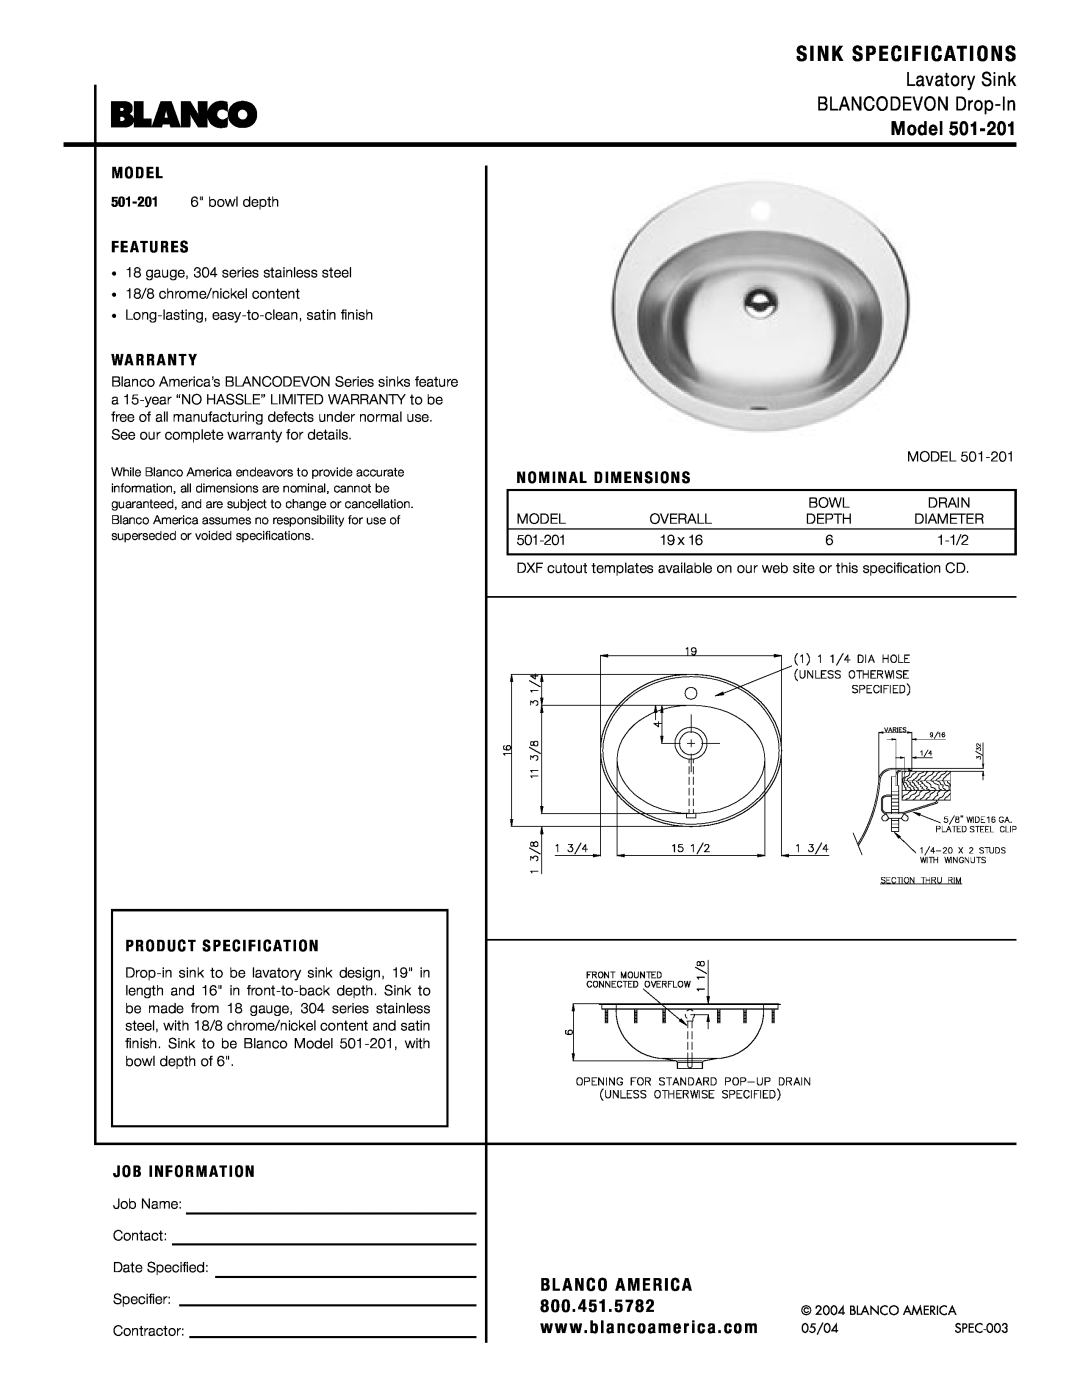 Blanco 501-201 warranty Sink Specifications, Lavatory Sink BLANCODEVON Drop-In, Model, Bl Anco America, M O D E L 